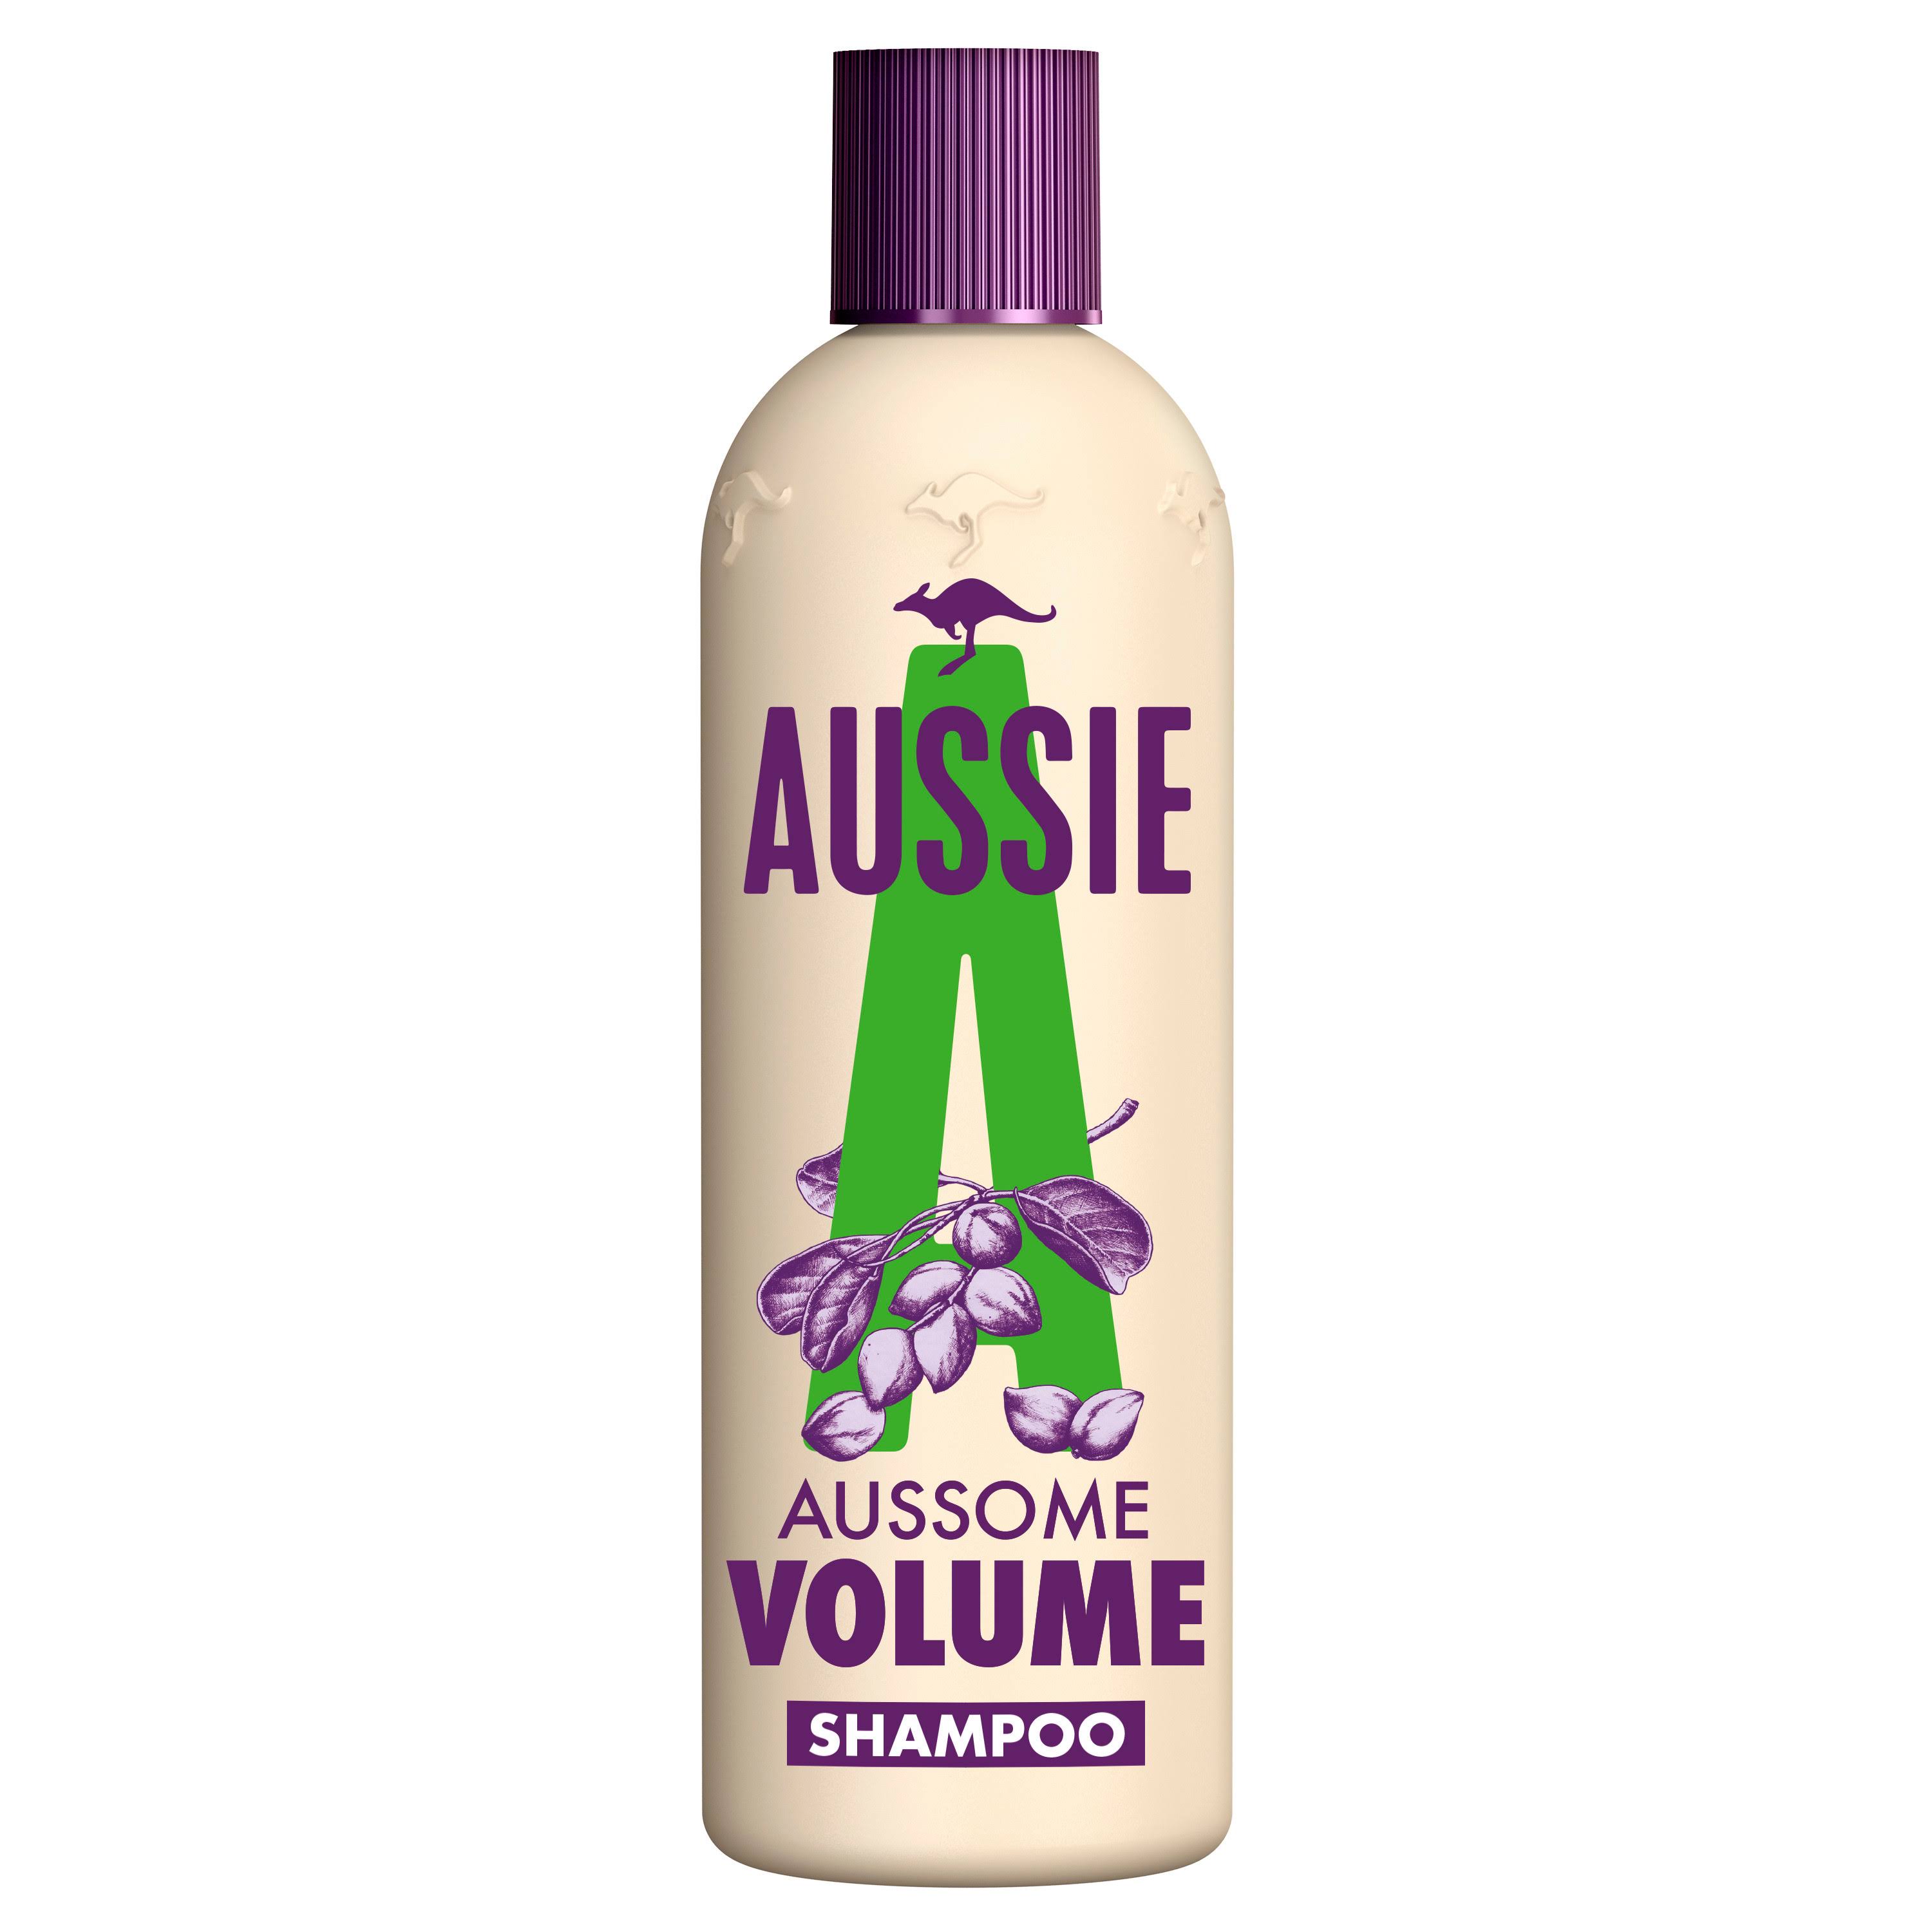 Aussie Aussome Volume Shampoo Volumising Shampoo - 300ml